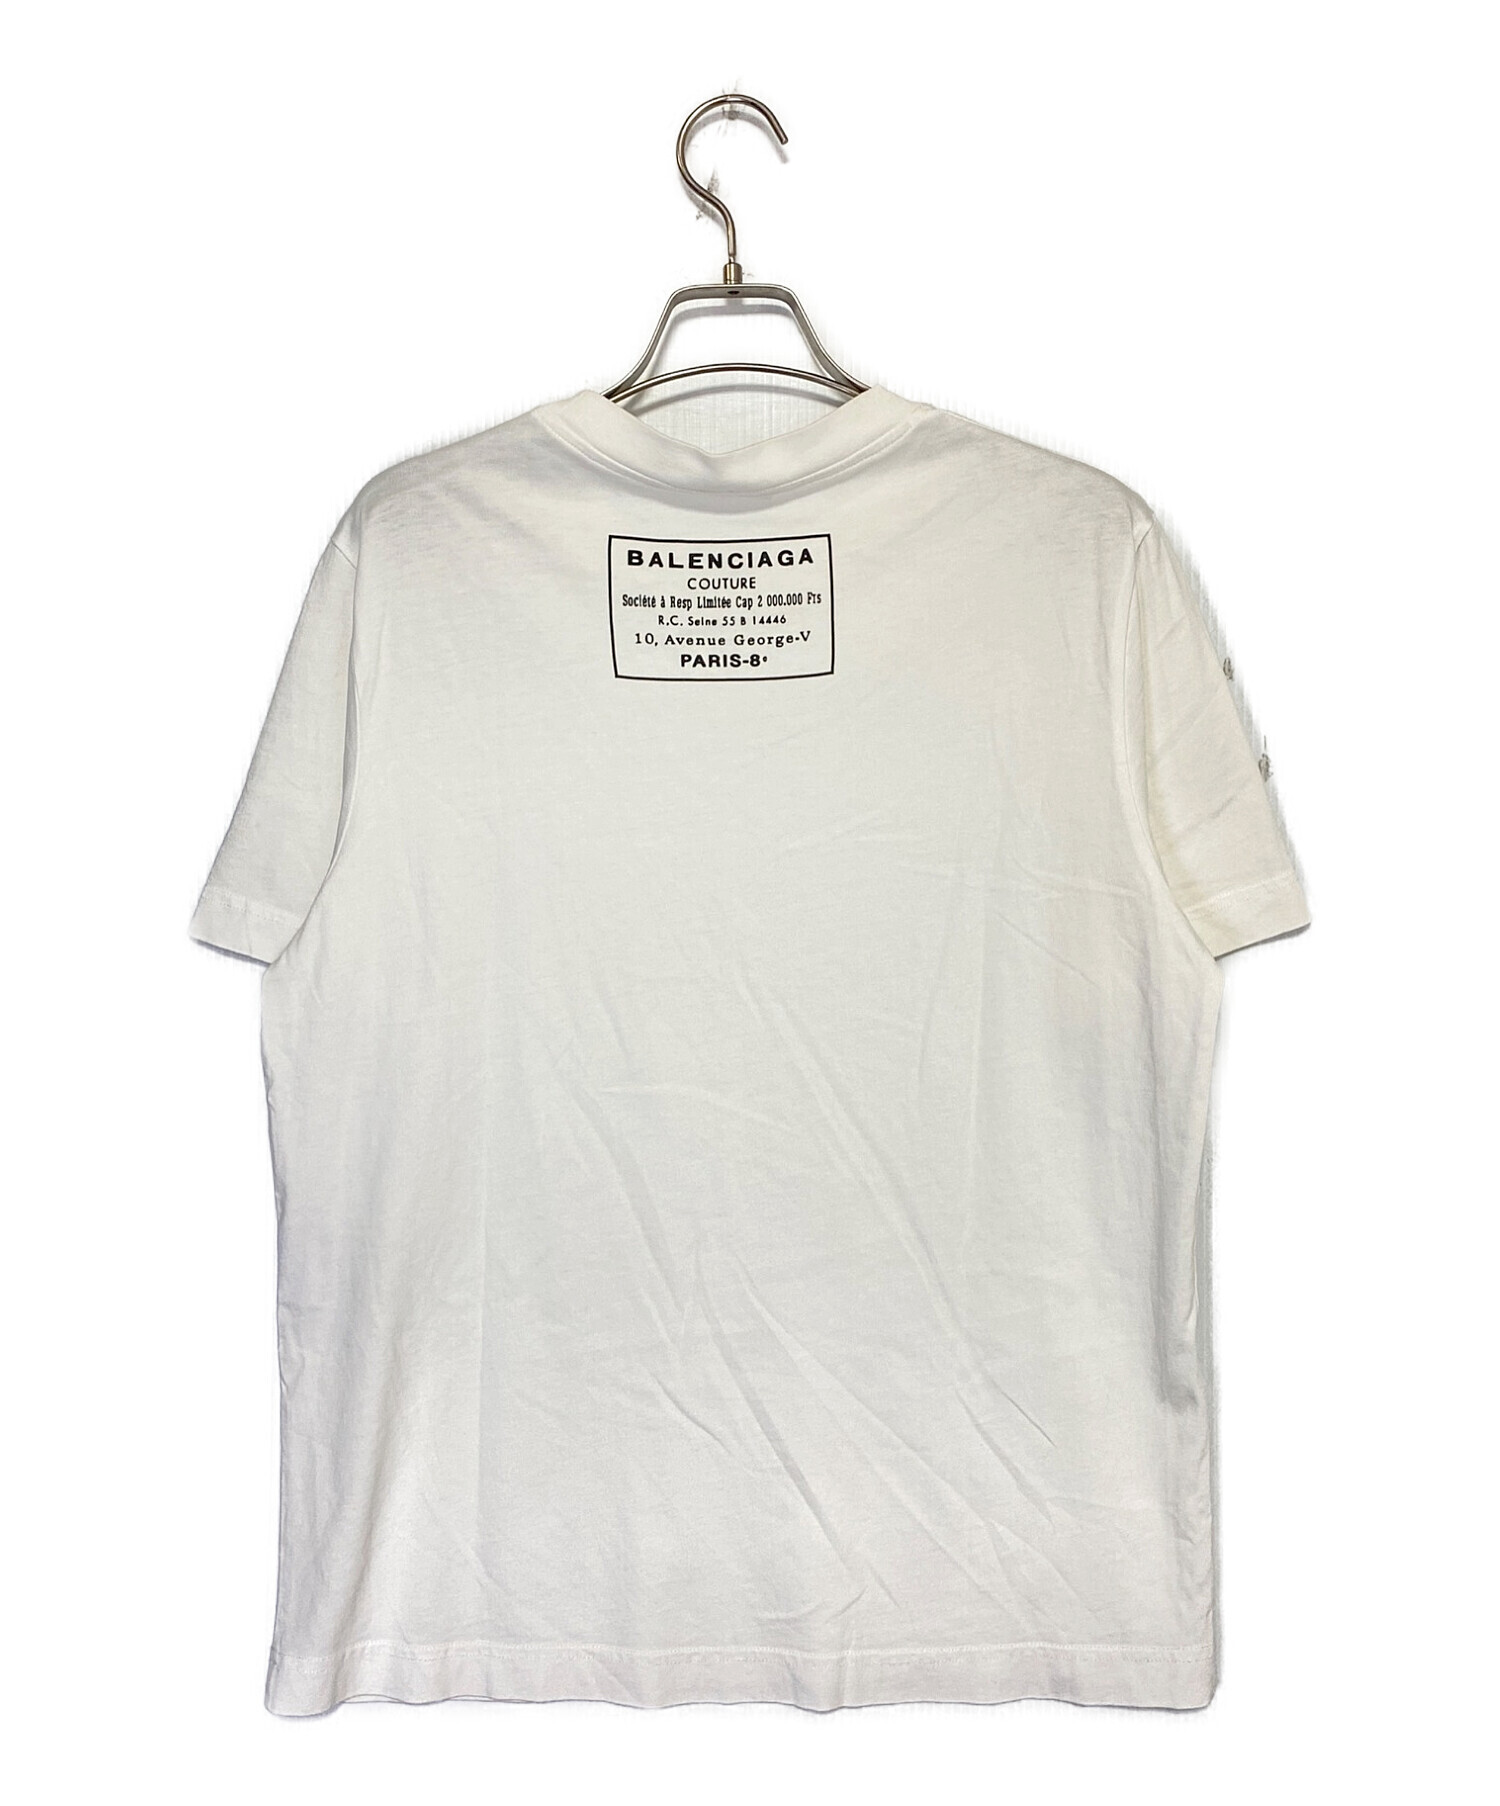 前は無地の旧タイプになりますバレンシアガ　balenciaga バックロゴ　tシャツ ホワイト